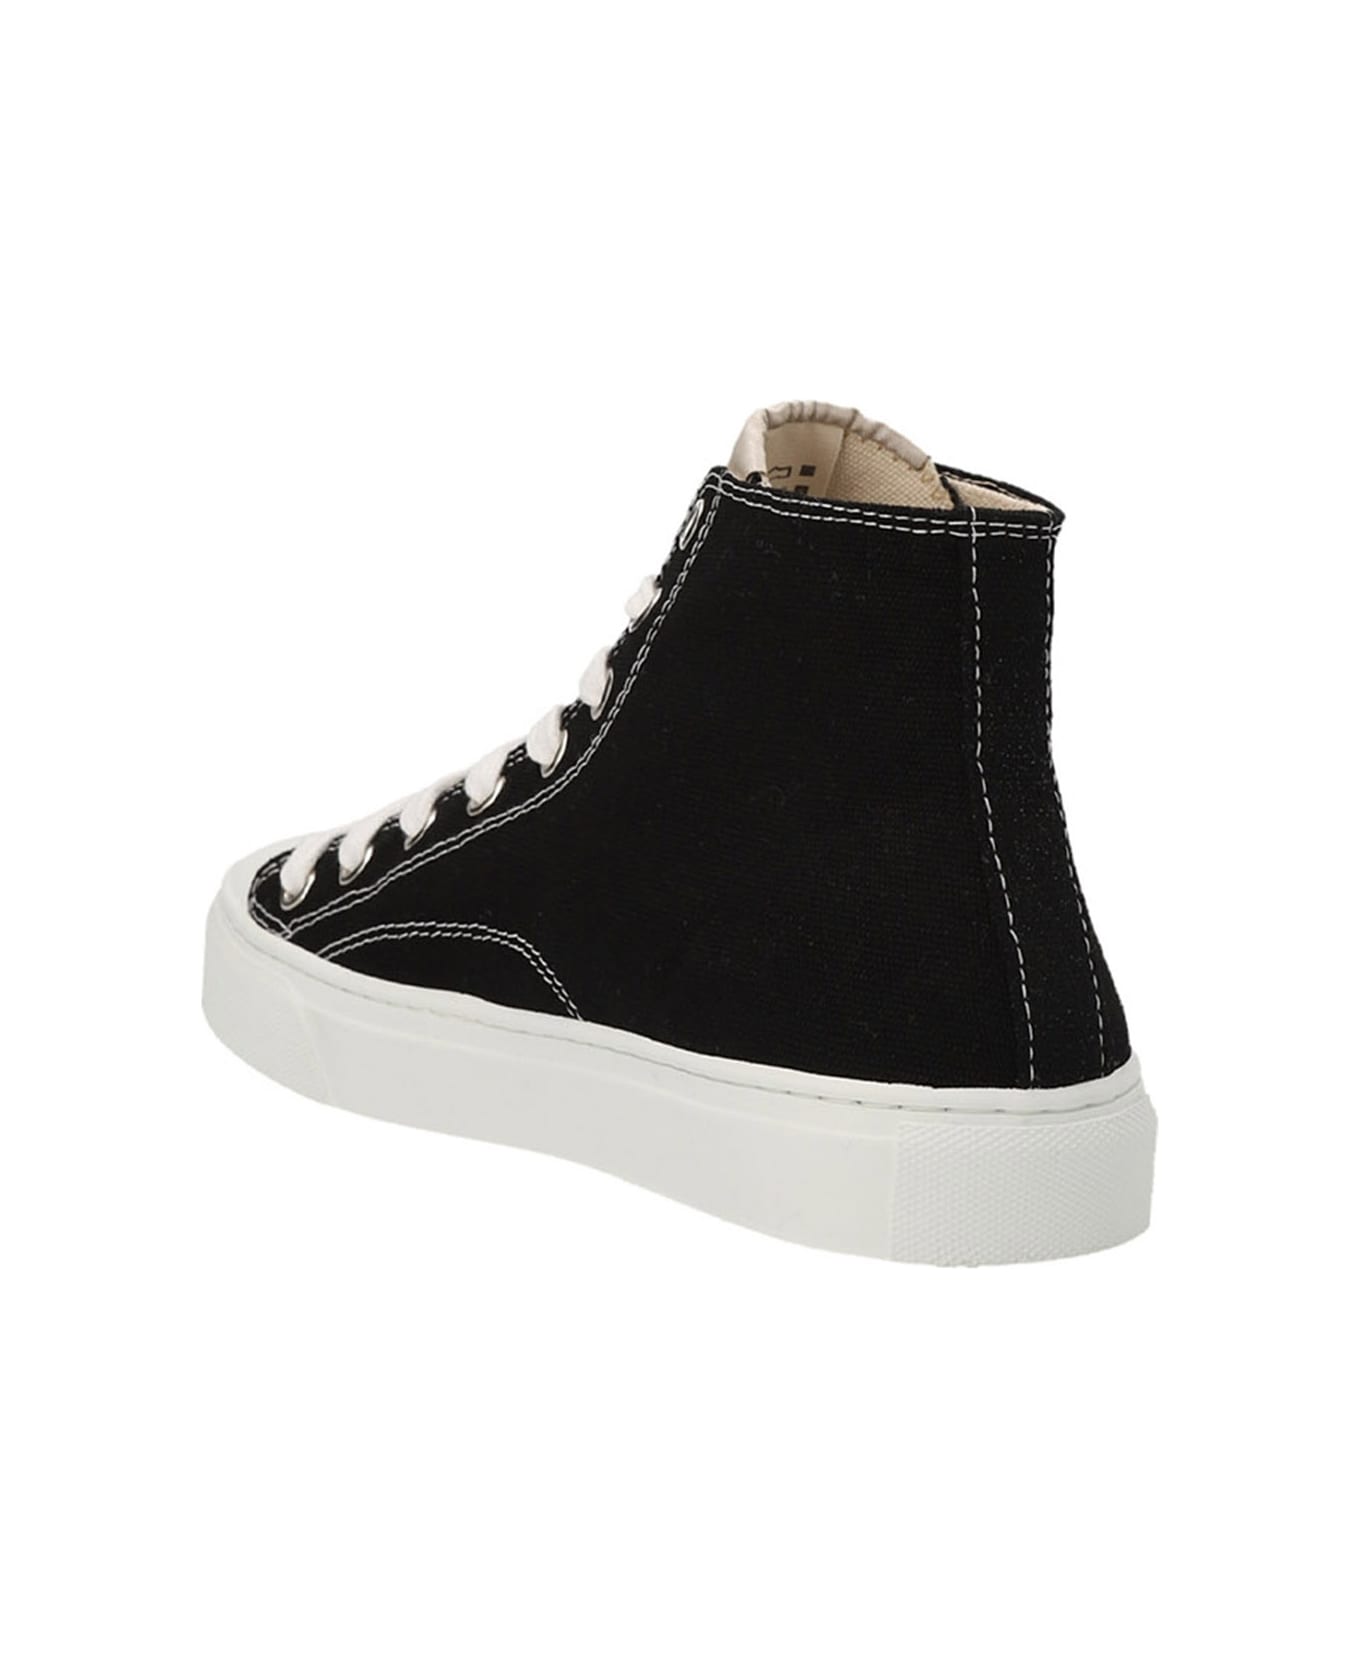 Vivienne Westwood 'plimsoll' Sneakers - White/Black スニーカー